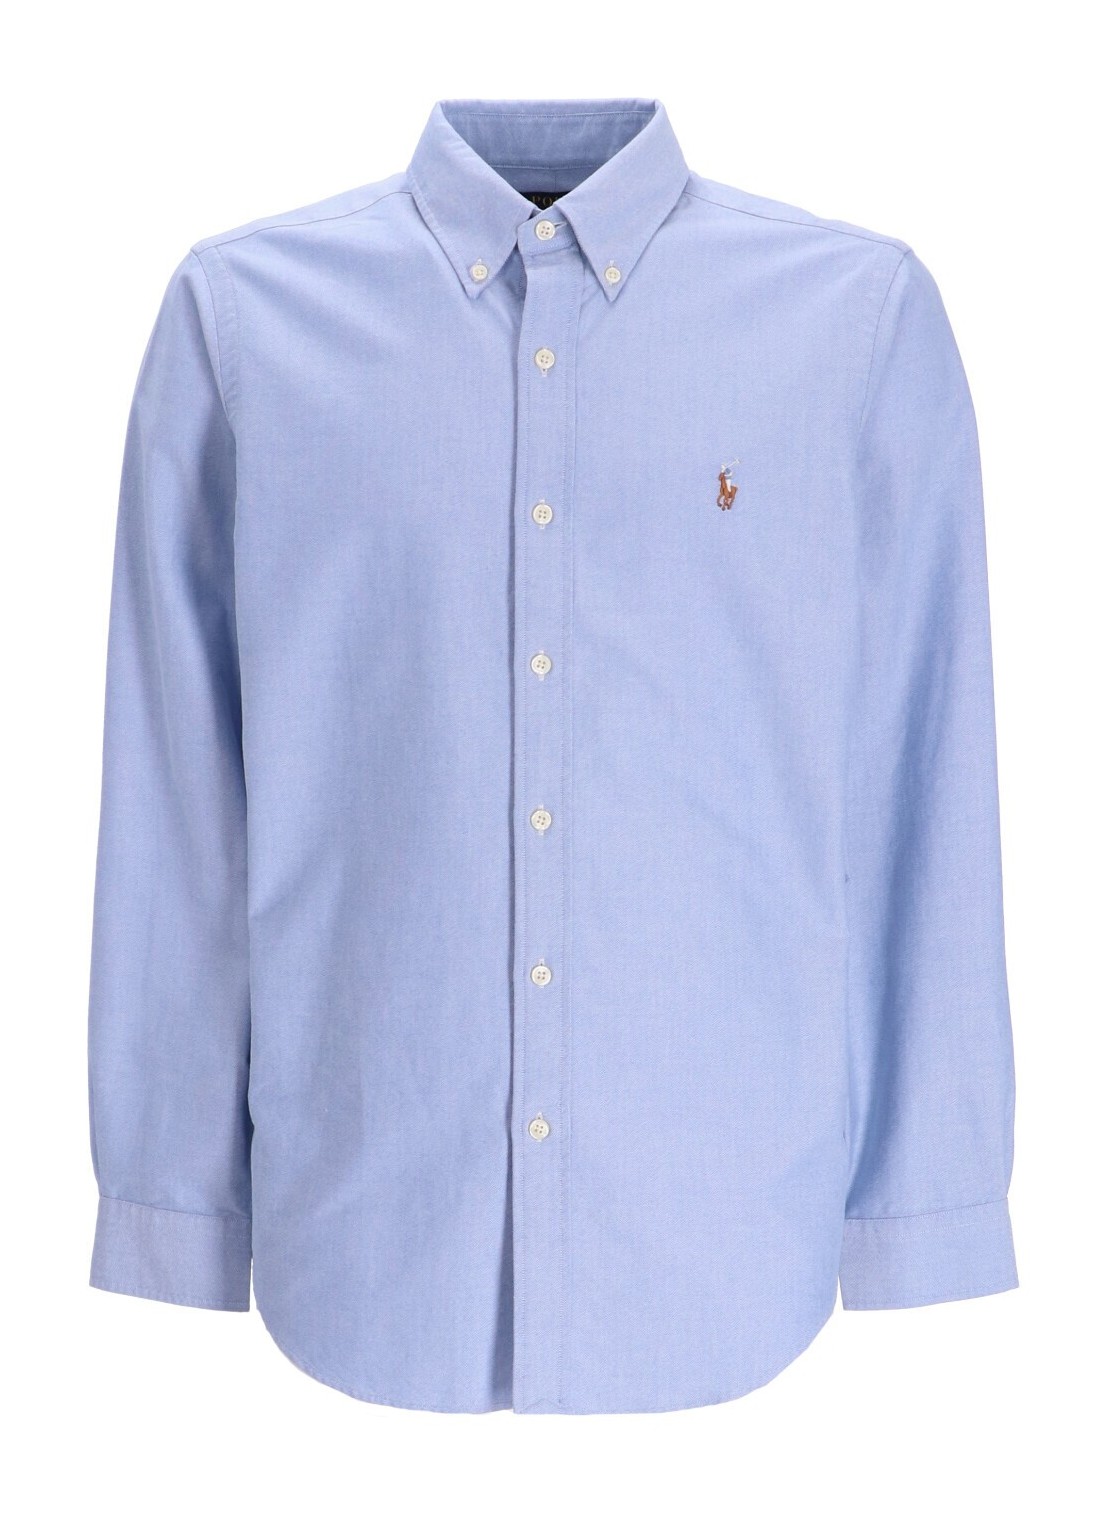 Camiseria polo ralph lauren shirt man cubdppcs-long sleeve-sport shirt 710792041002 blue talla Azul
